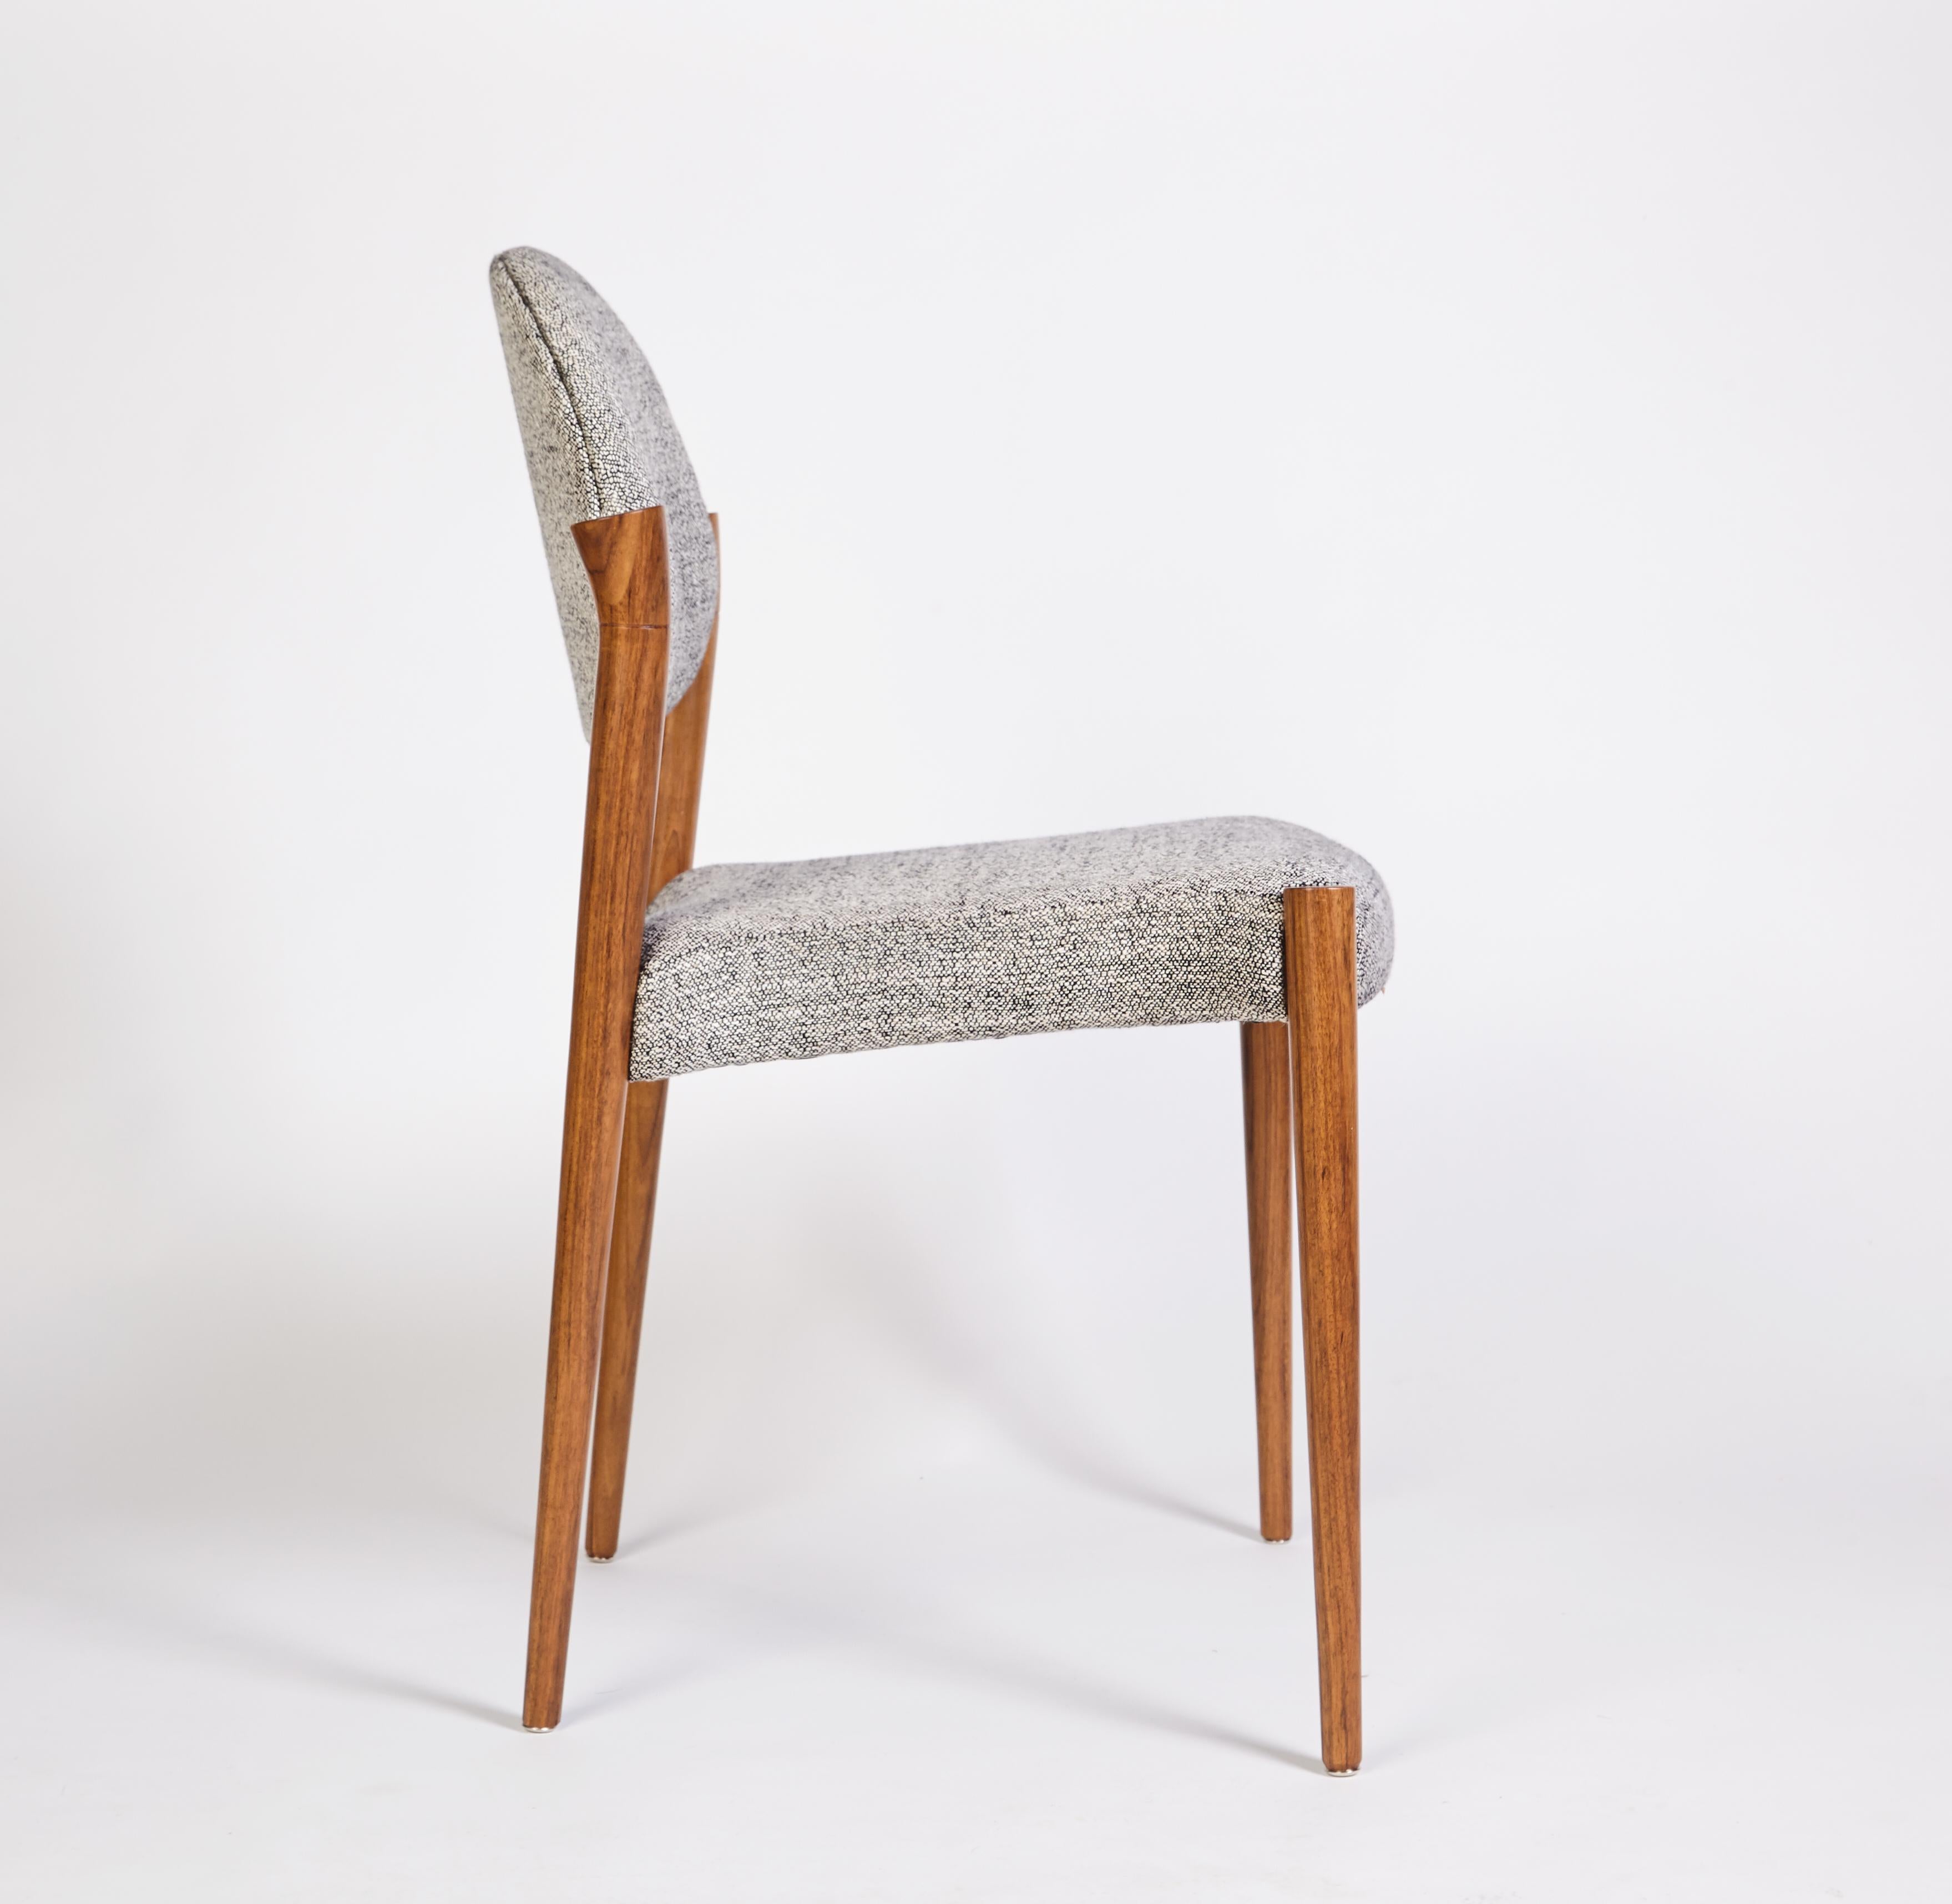 Tanoco Small Chair Set of 6 Chairs, Mutenye Wood, Handcrafted by Duistt

Les chaises Tanoco s'inspirent de l'architecture et de la décoration d'intérieur du milieu du siècle dernier. Avec ses longues arches, il crée simultanément une sensation de